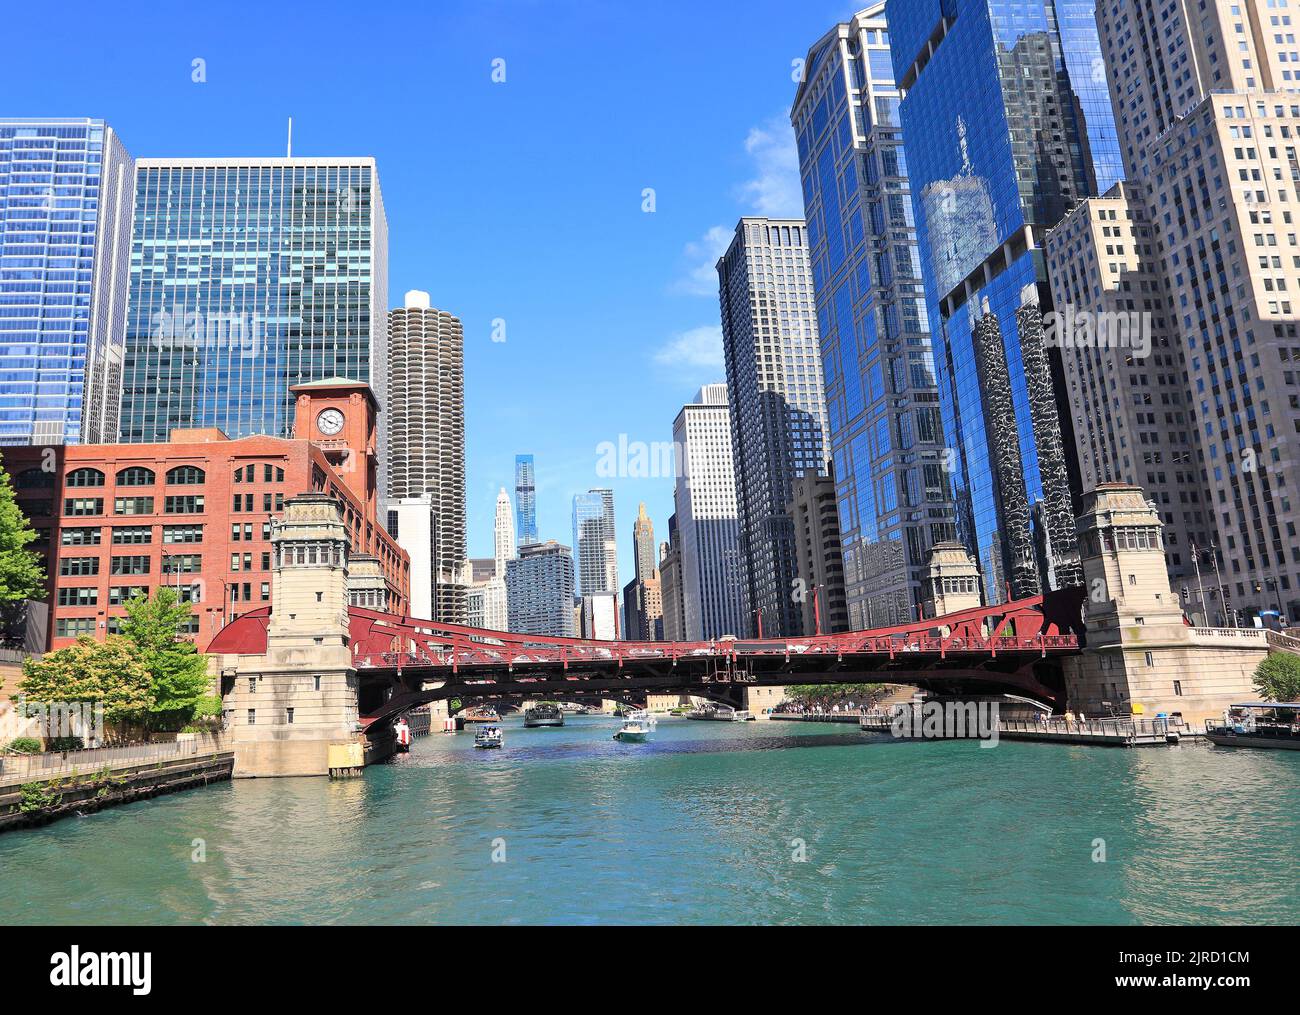 Crucero turístico por Chicago y rascacielos en el río, Illinois, EE.UU Foto de stock